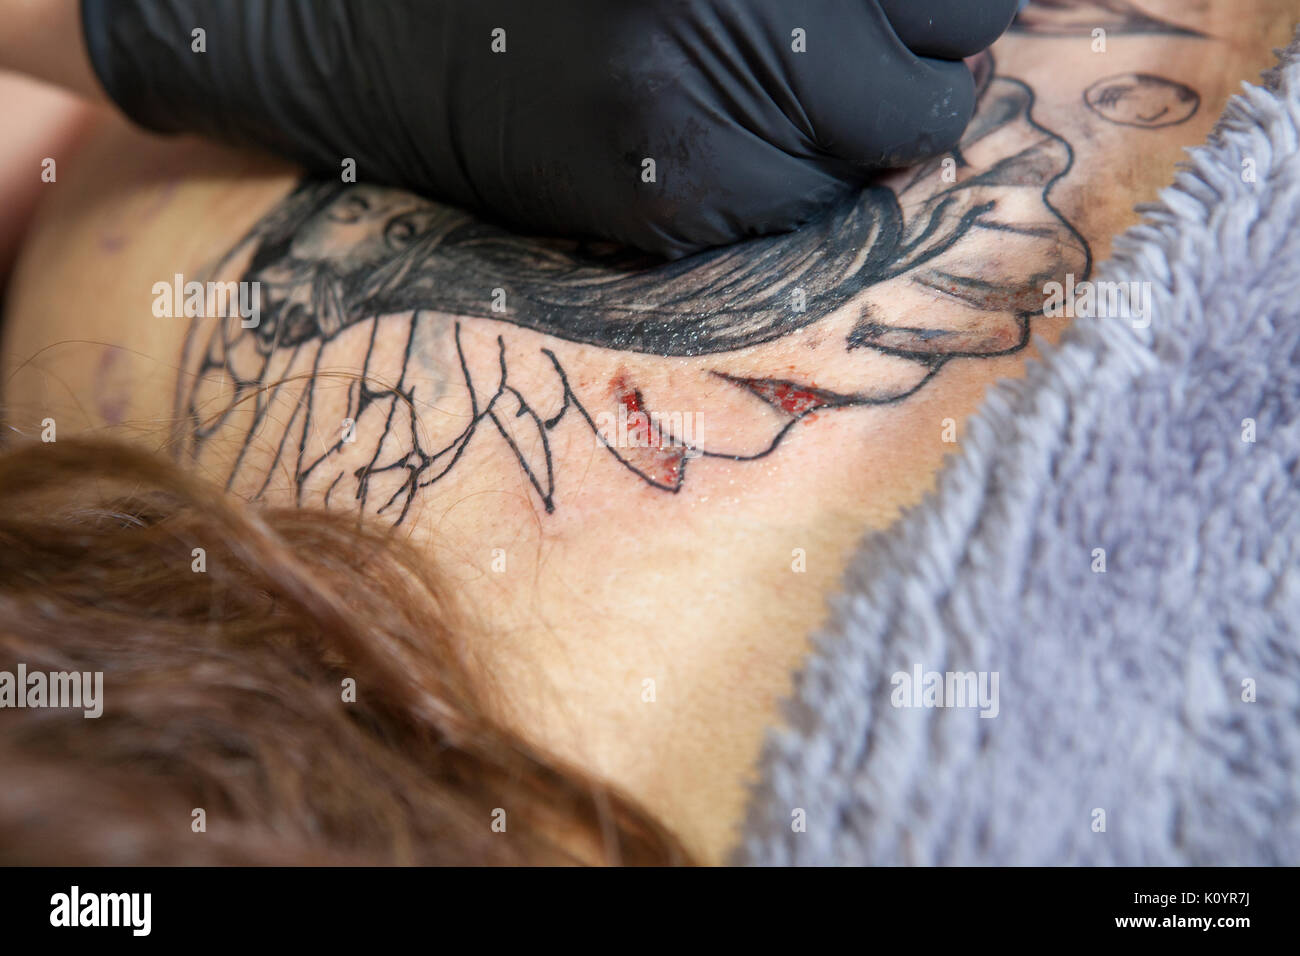 https://c8.alamy.com/compes/k0yr7j/artista-femenina-del-tatuaje-se-aplica-para-el-omoplato-de-una-mujer-cliente-primer-plano-de-la-tinta-del-lapiz-maquina-inyectando-tinta-negra-k0yr7j.jpg